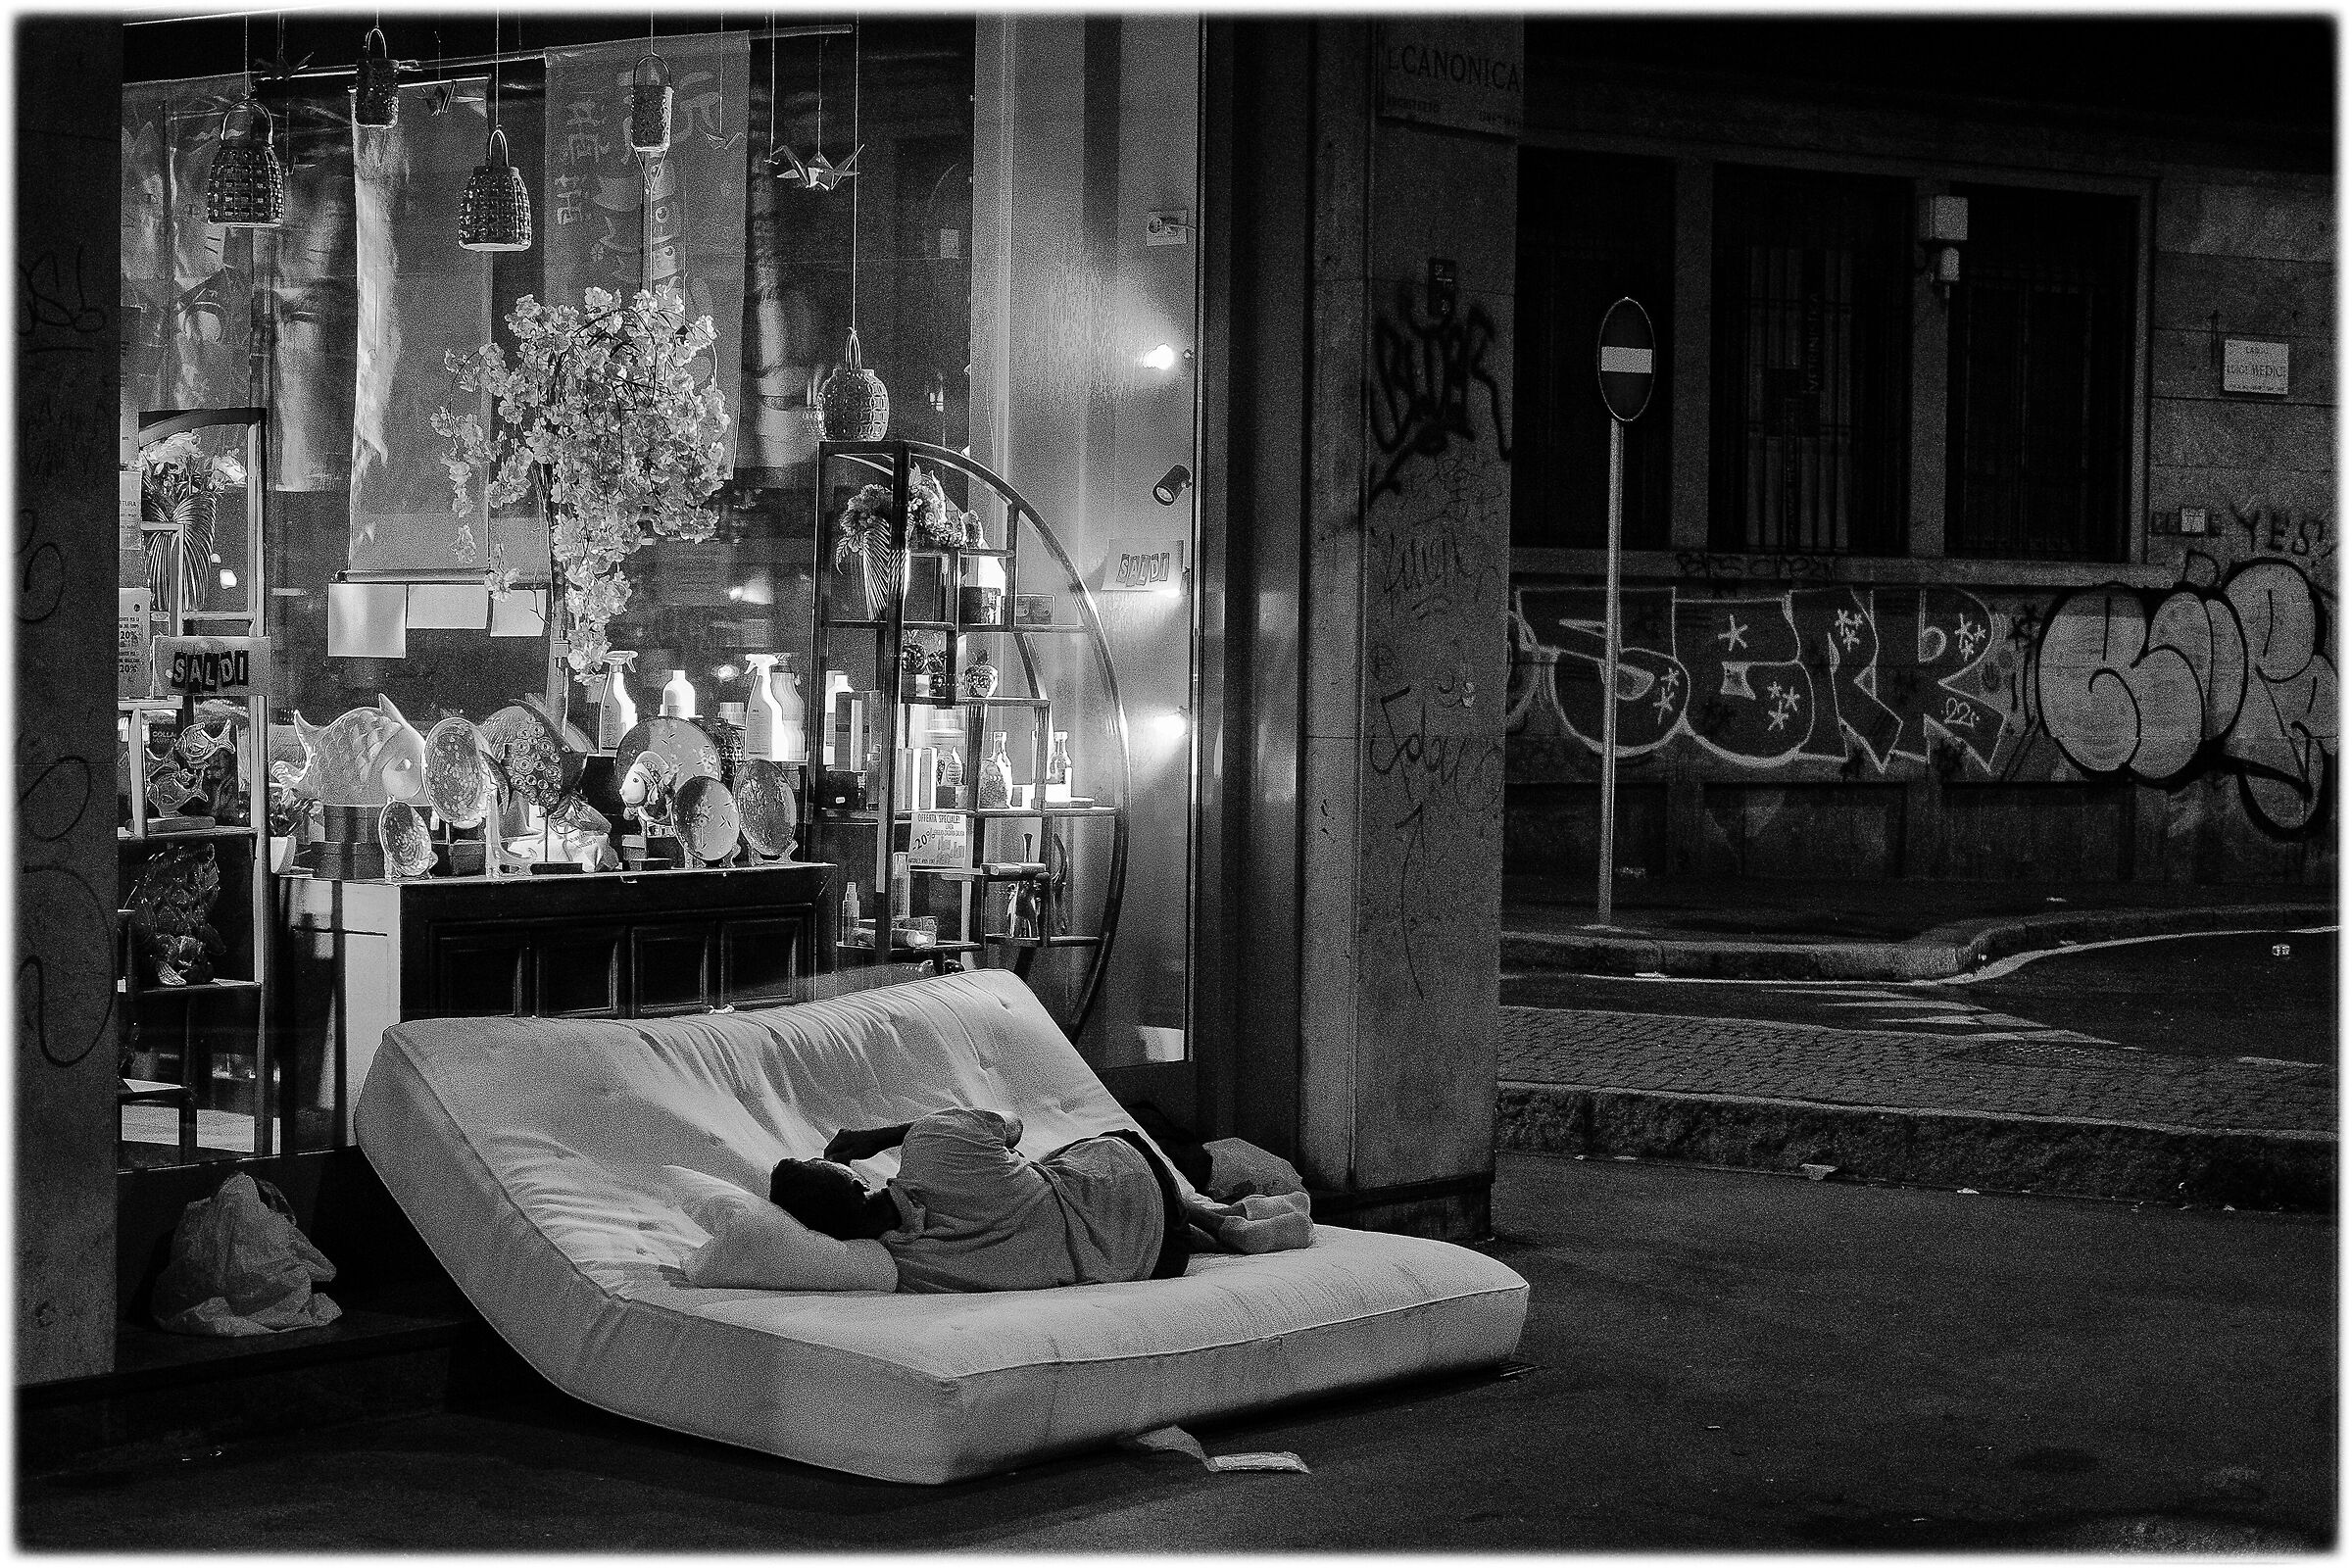 Milano: Dolce dormire...